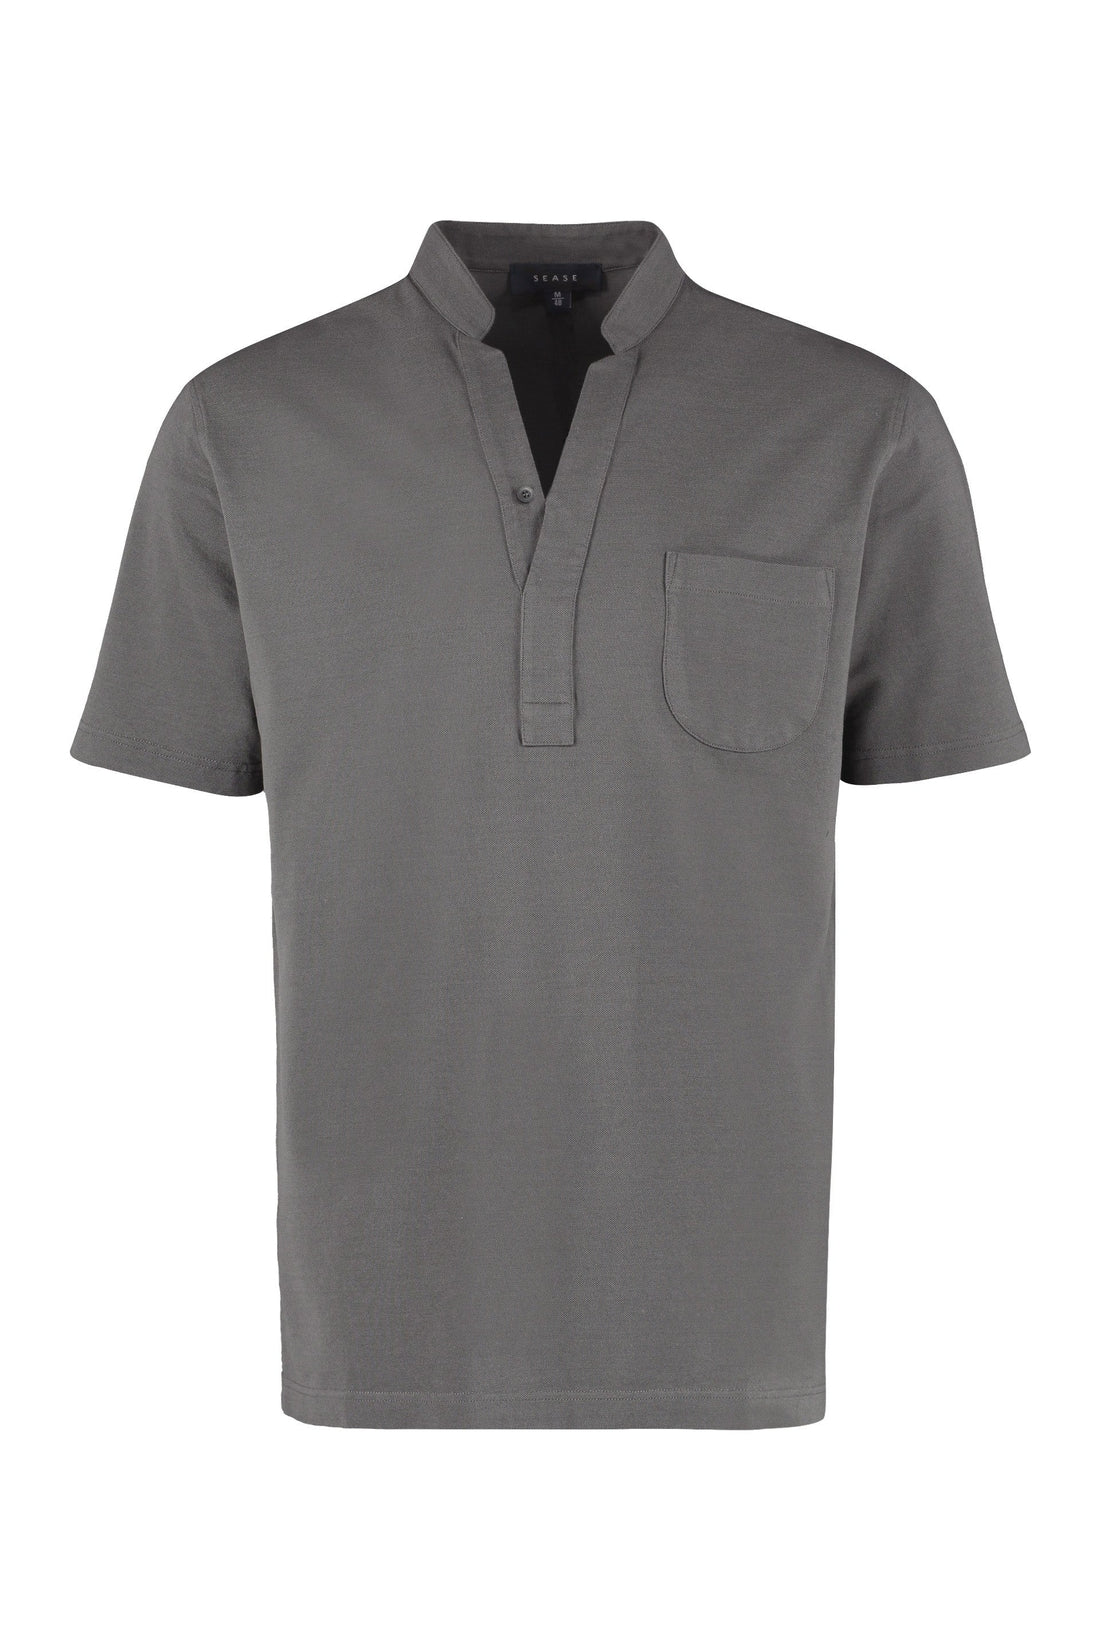 Sease-OUTLET-SALE-Cotton piqué polo shirt-ARCHIVIST